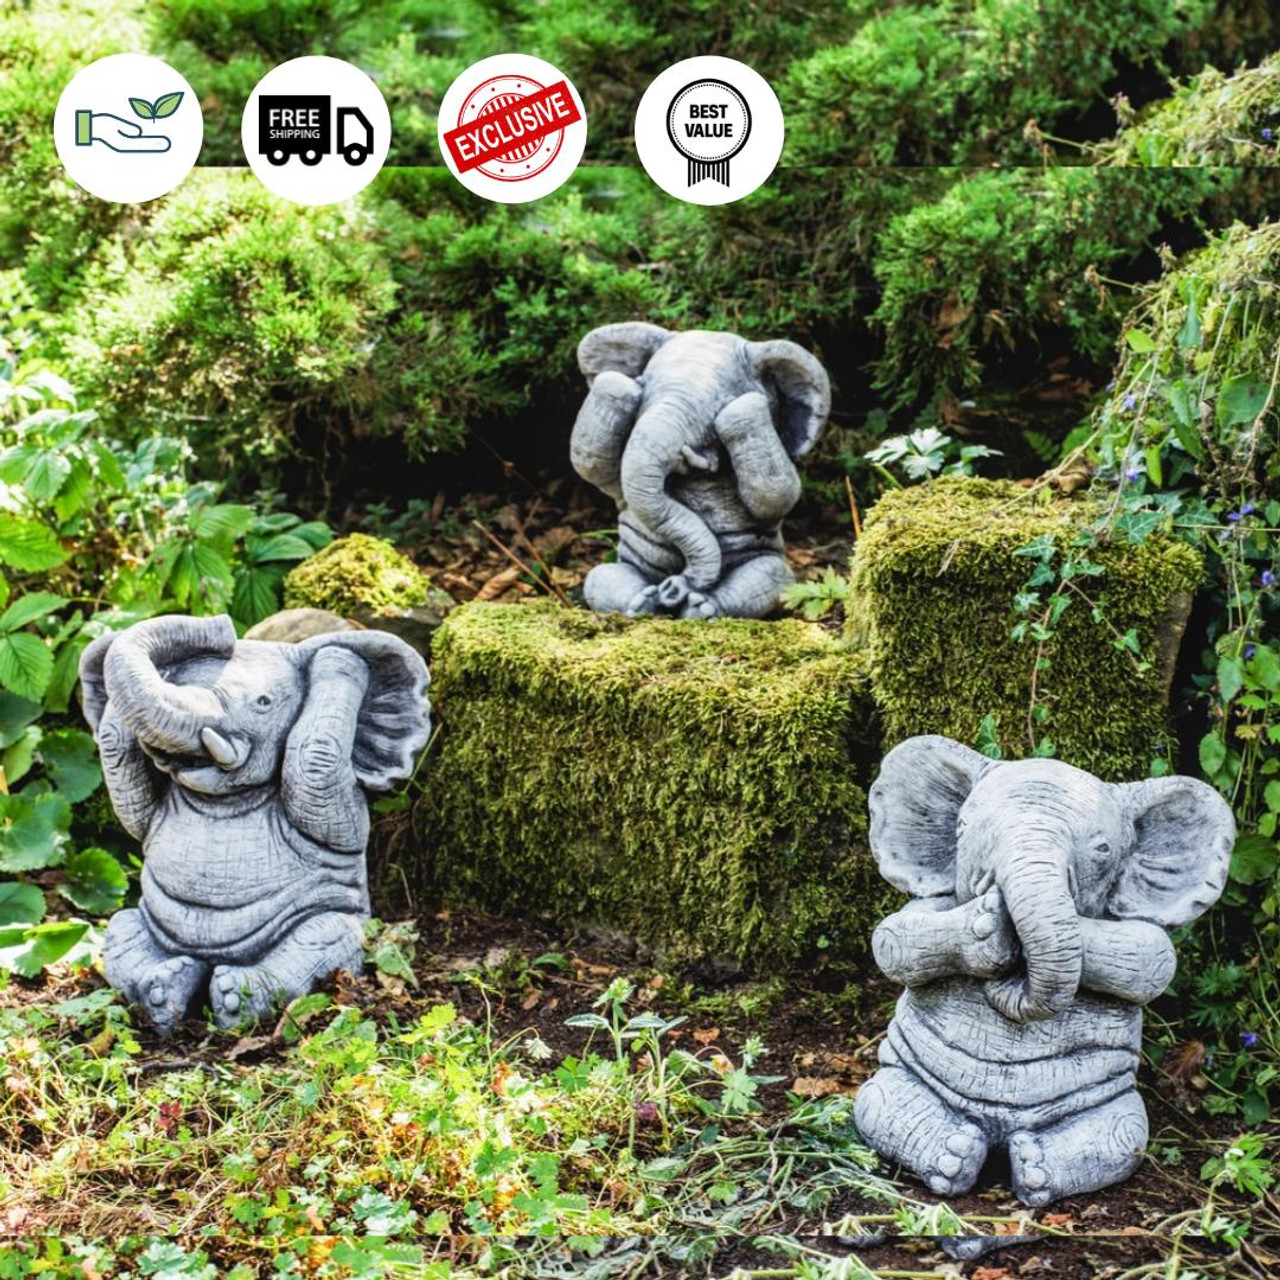 3 Wise Stone Elephants Garden Ornaments